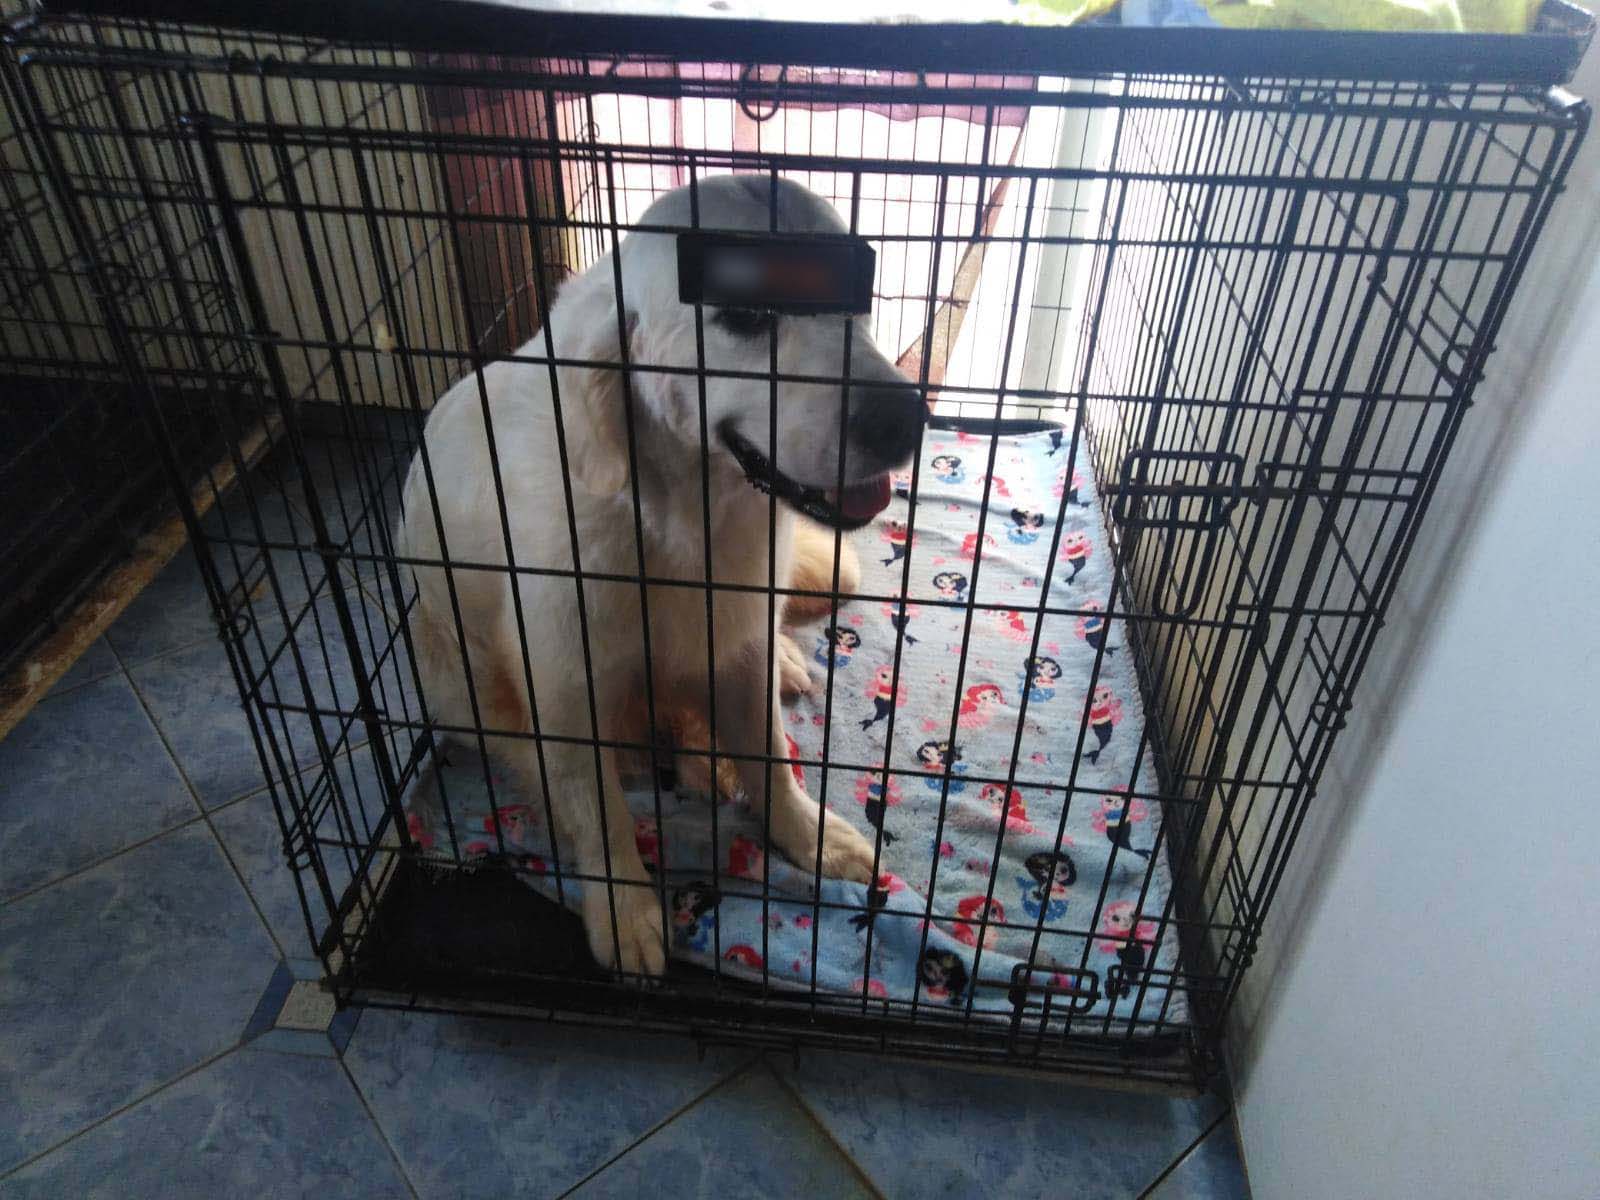 Θεσσαλονίκη: Στο αυτόφωρο η 60χρονη που κρατούσε 16 σκυλιά σε άθλιες συνθήκες στο σπίτι της